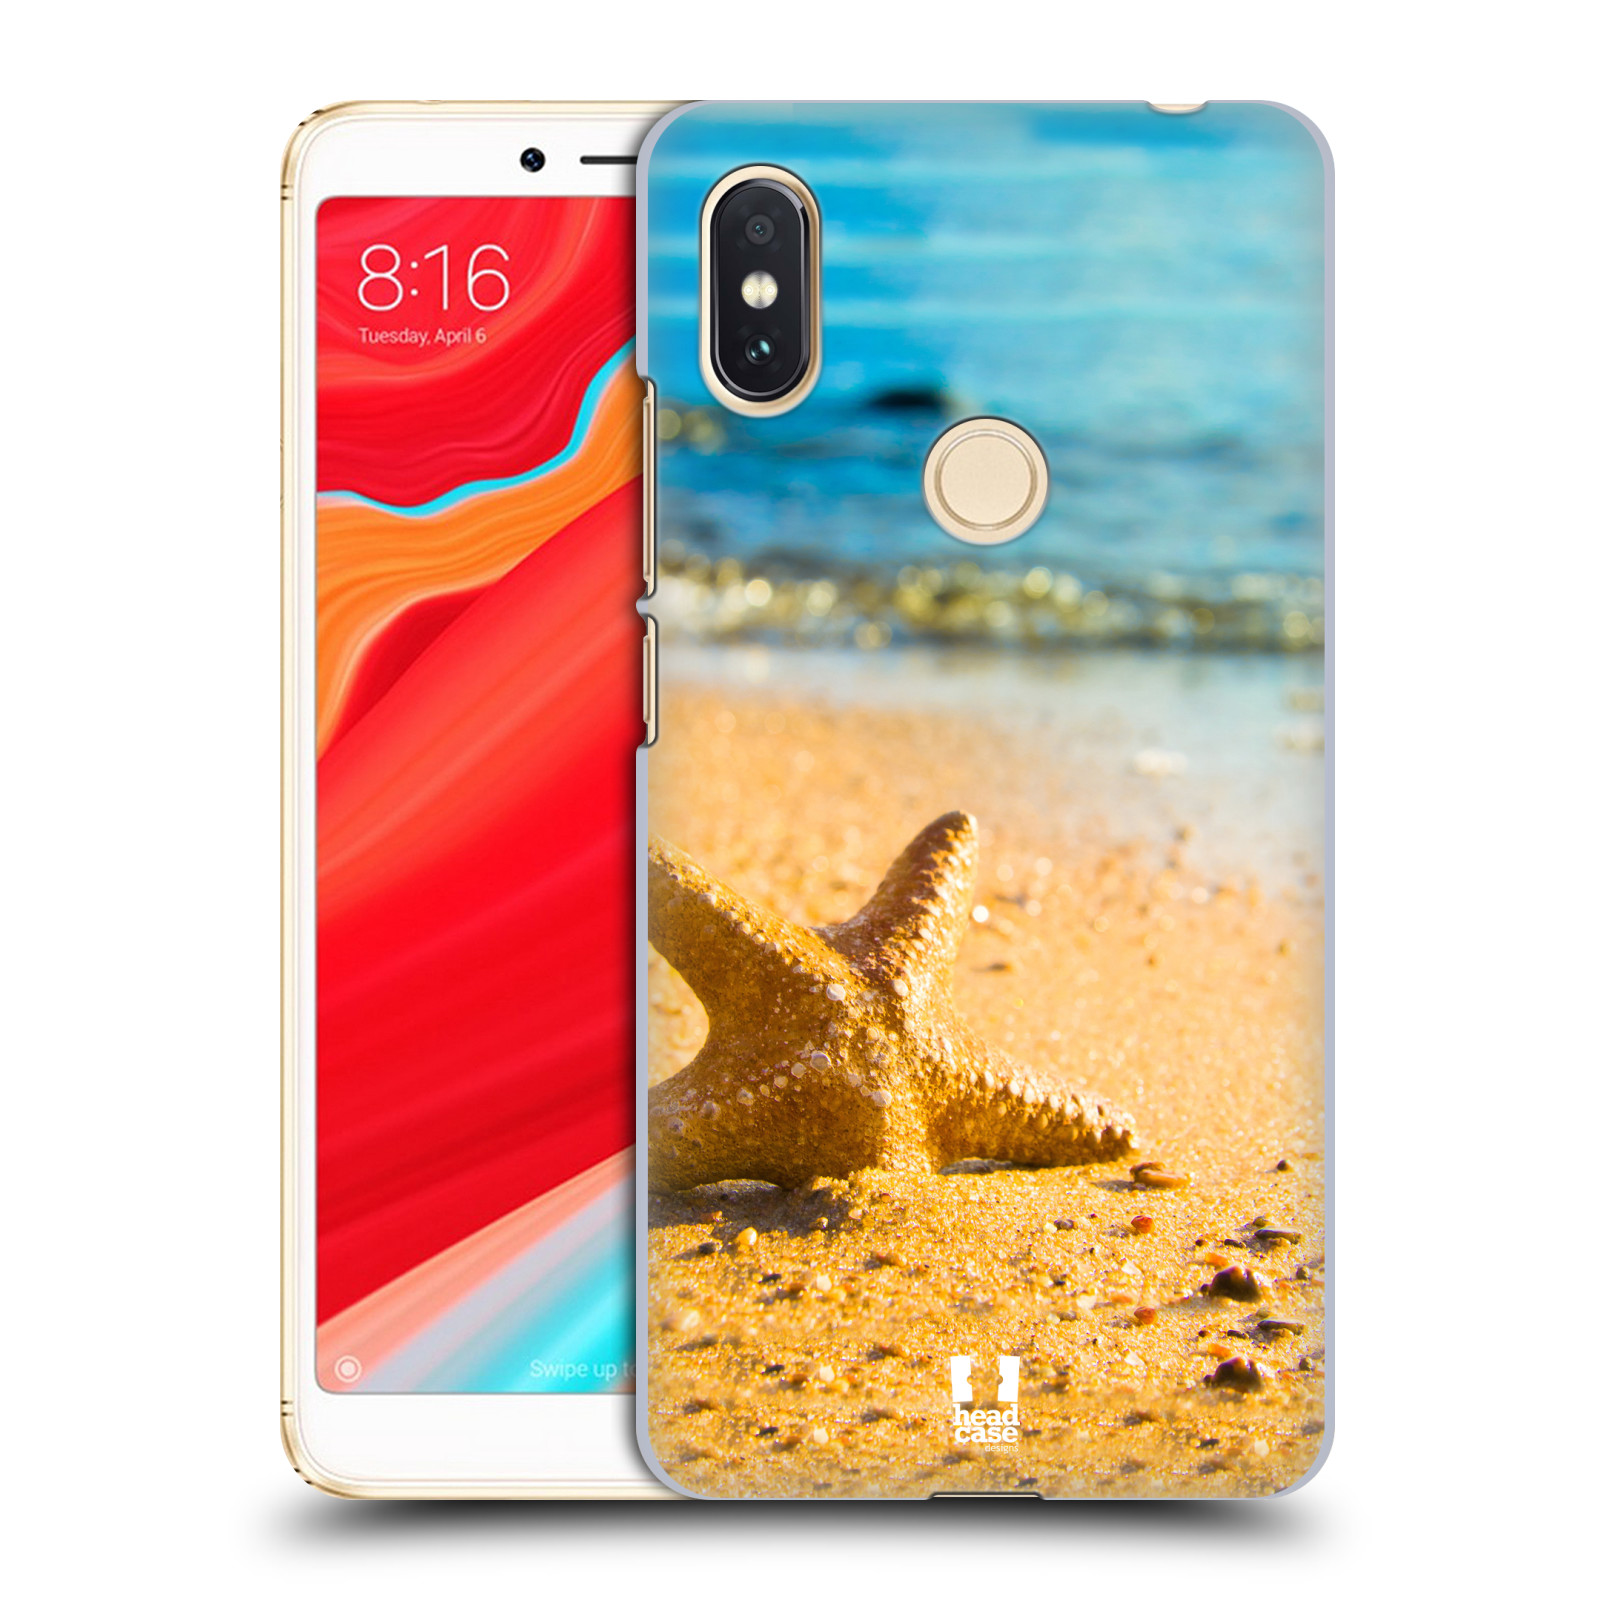 HEAD CASE plastový obal na mobil Xiaomi Redmi S2 vzor slavná zvířata foto hvězdice v písku